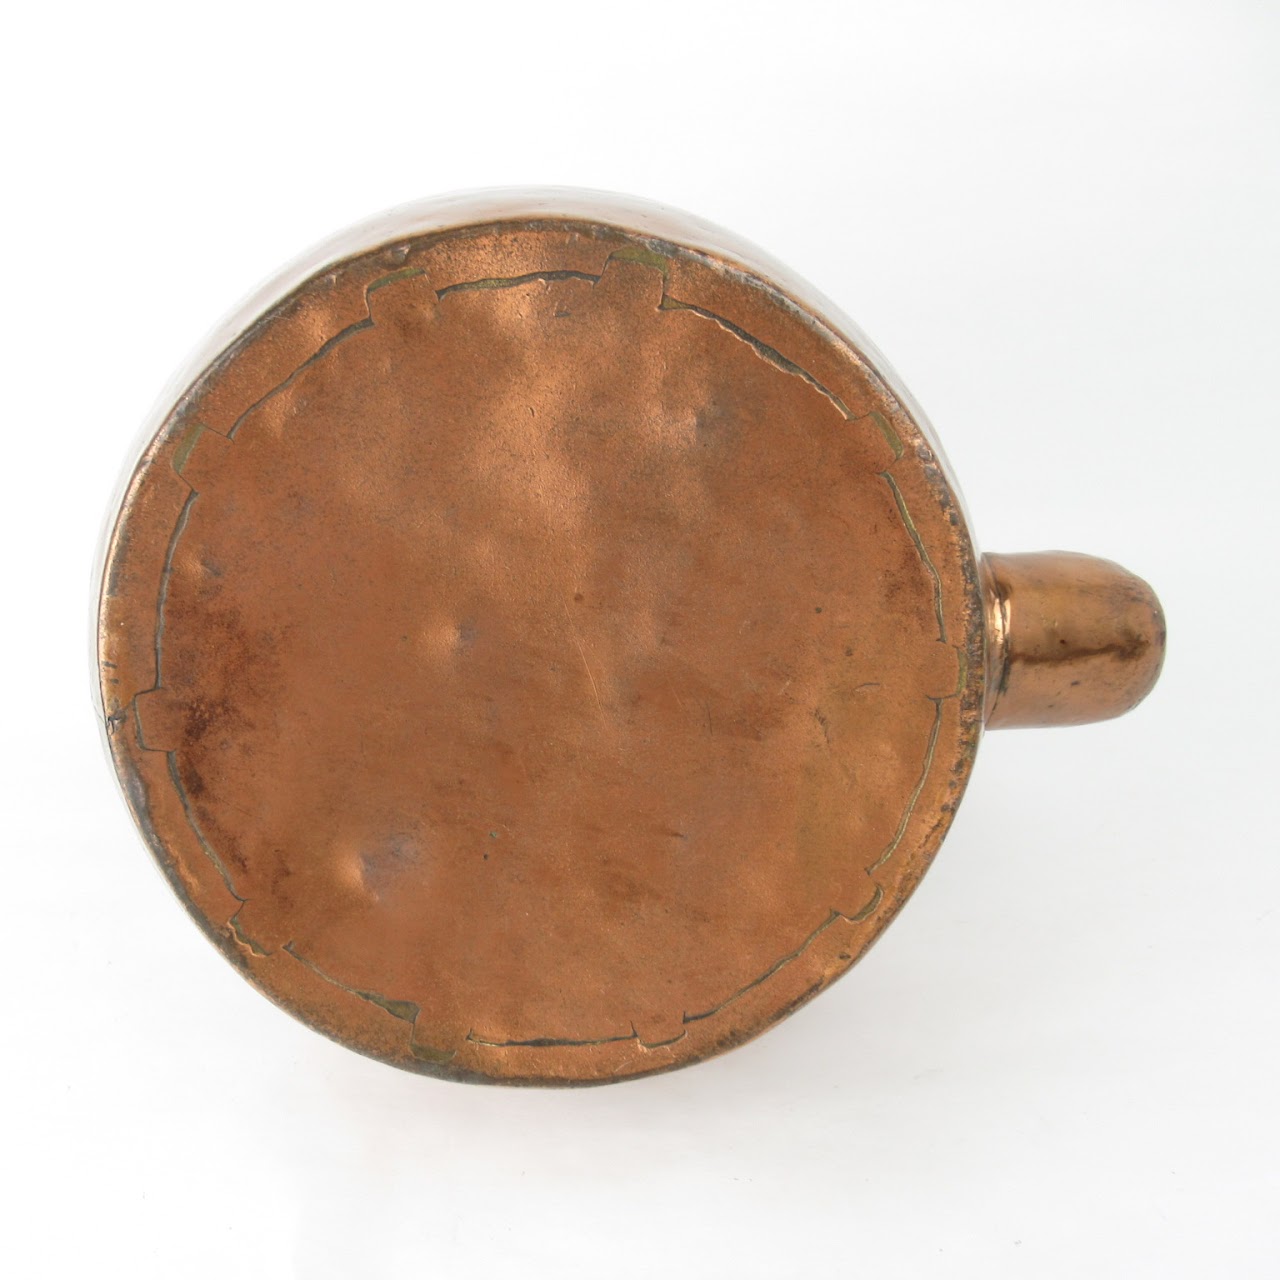 Antique Copper Tea Kettle